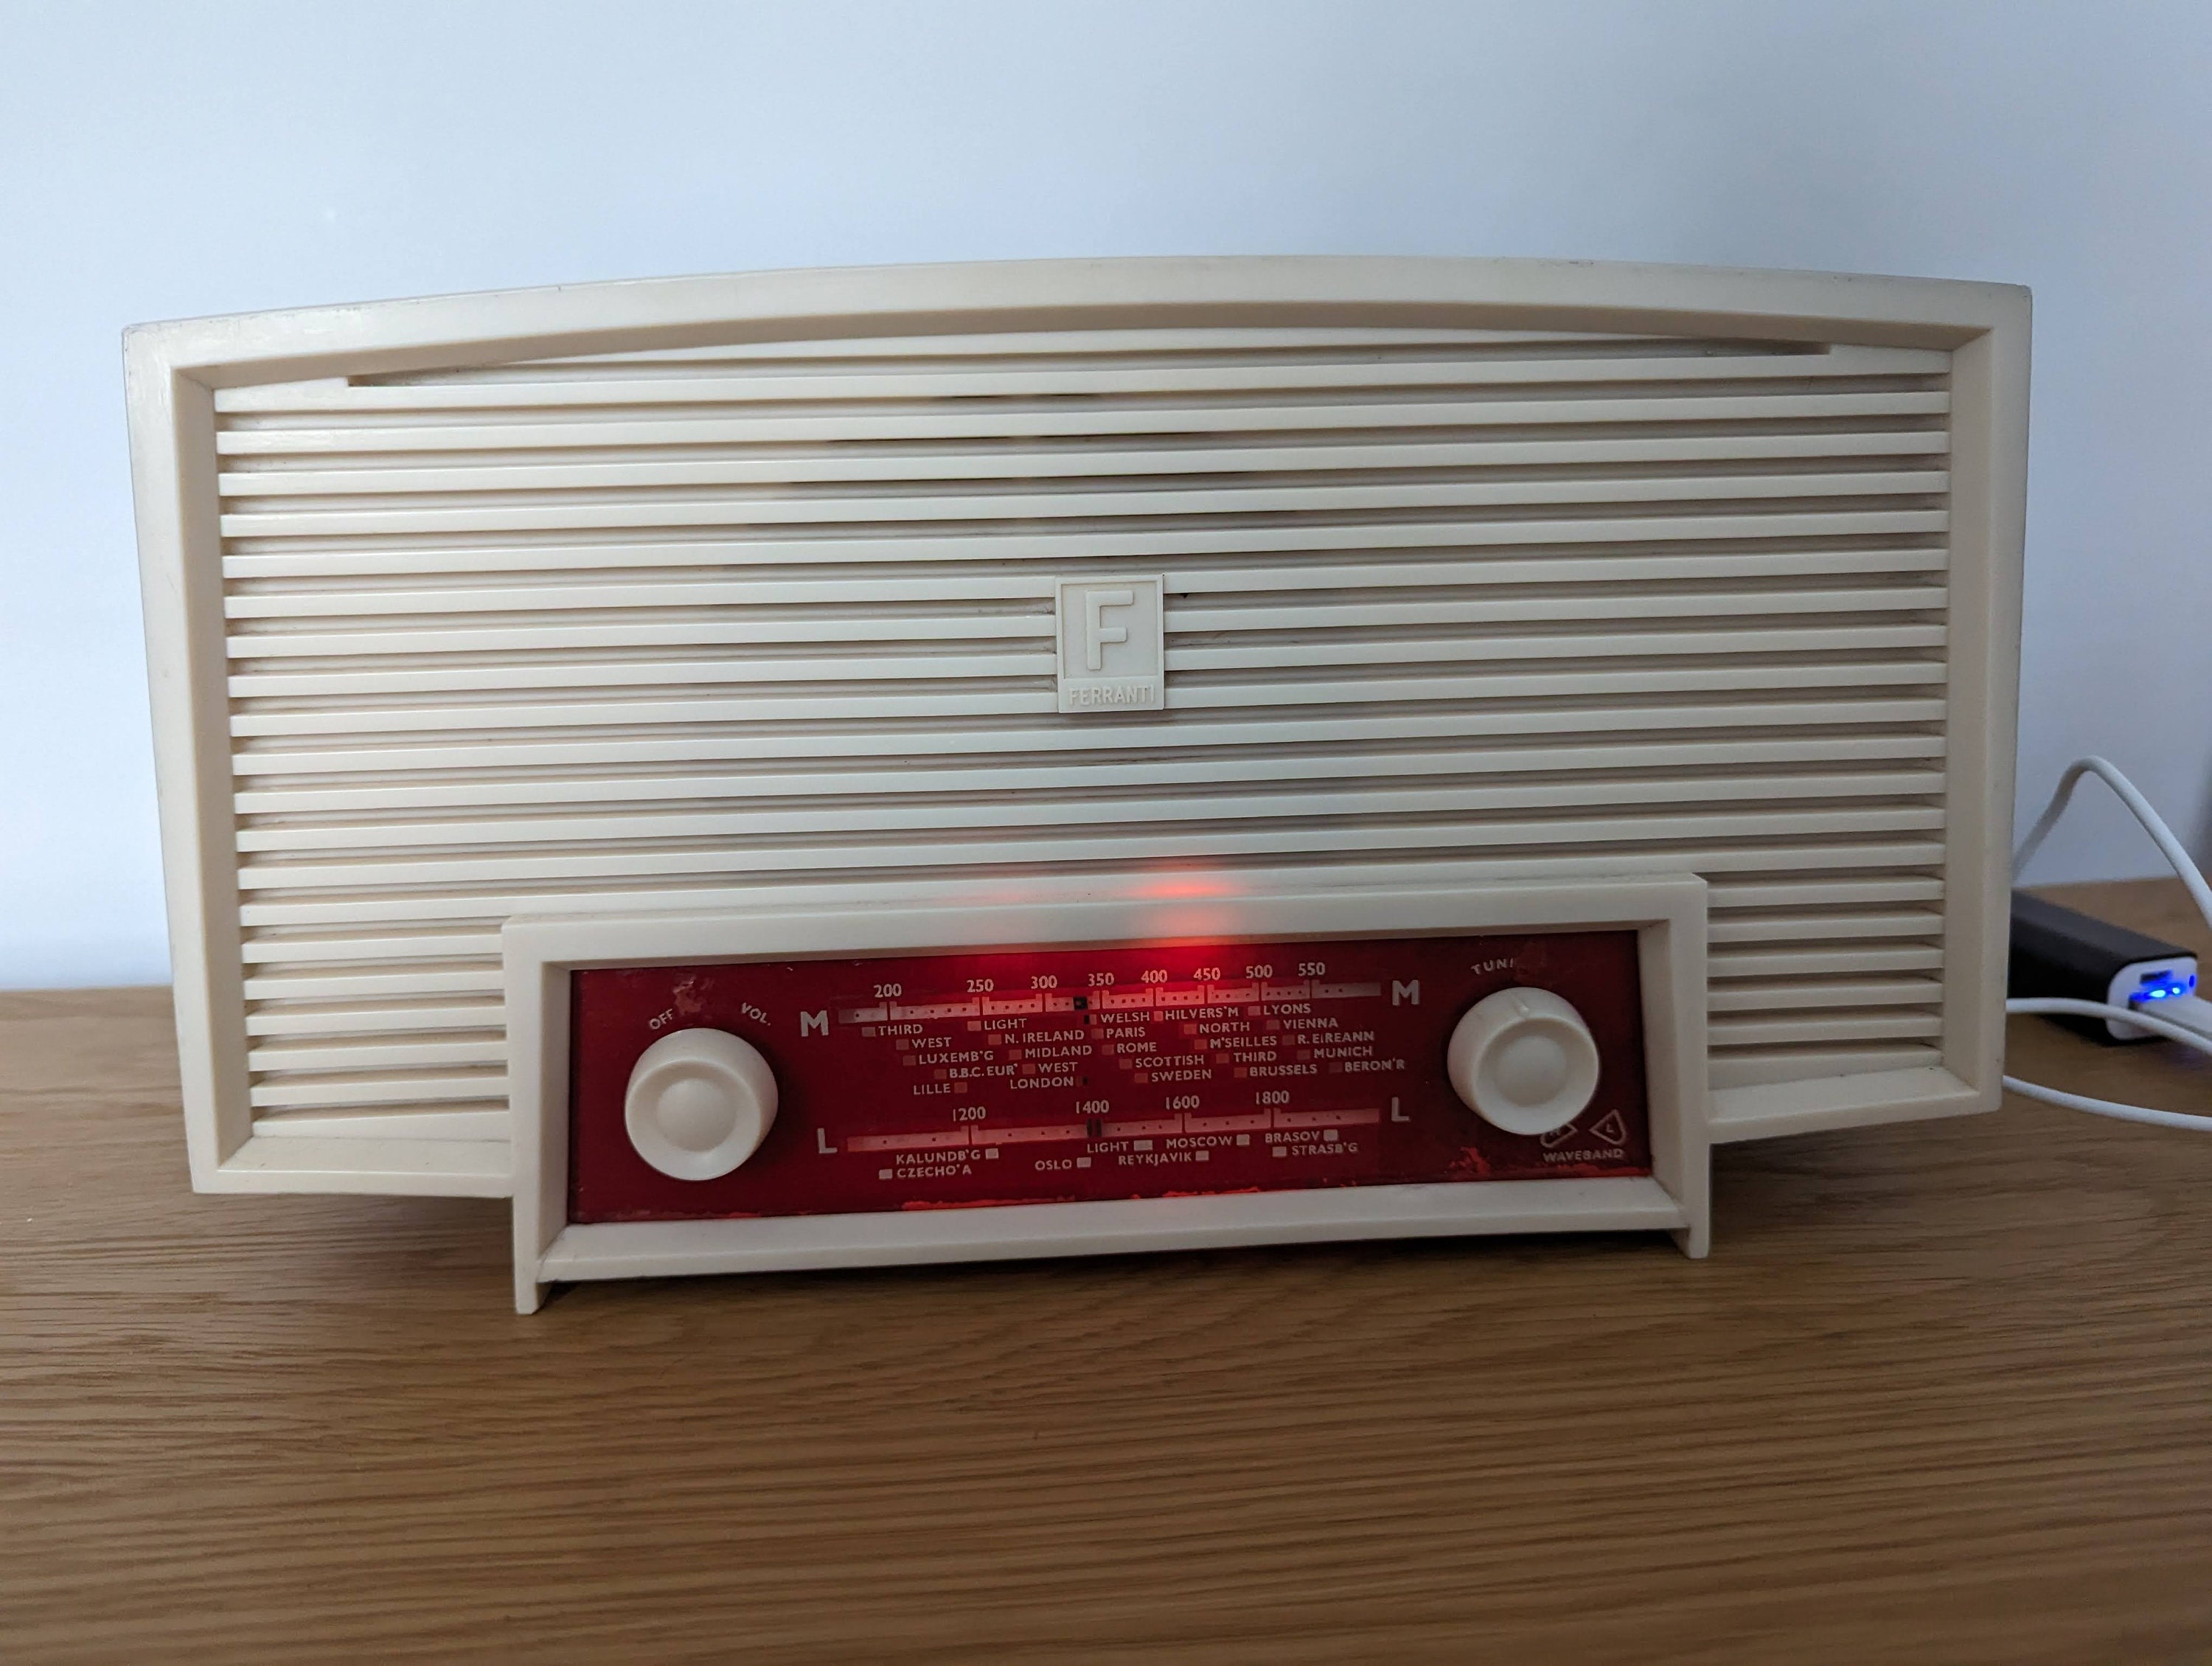 Enceinte Bluetooth Vintage Radio – Heritage Vintage™